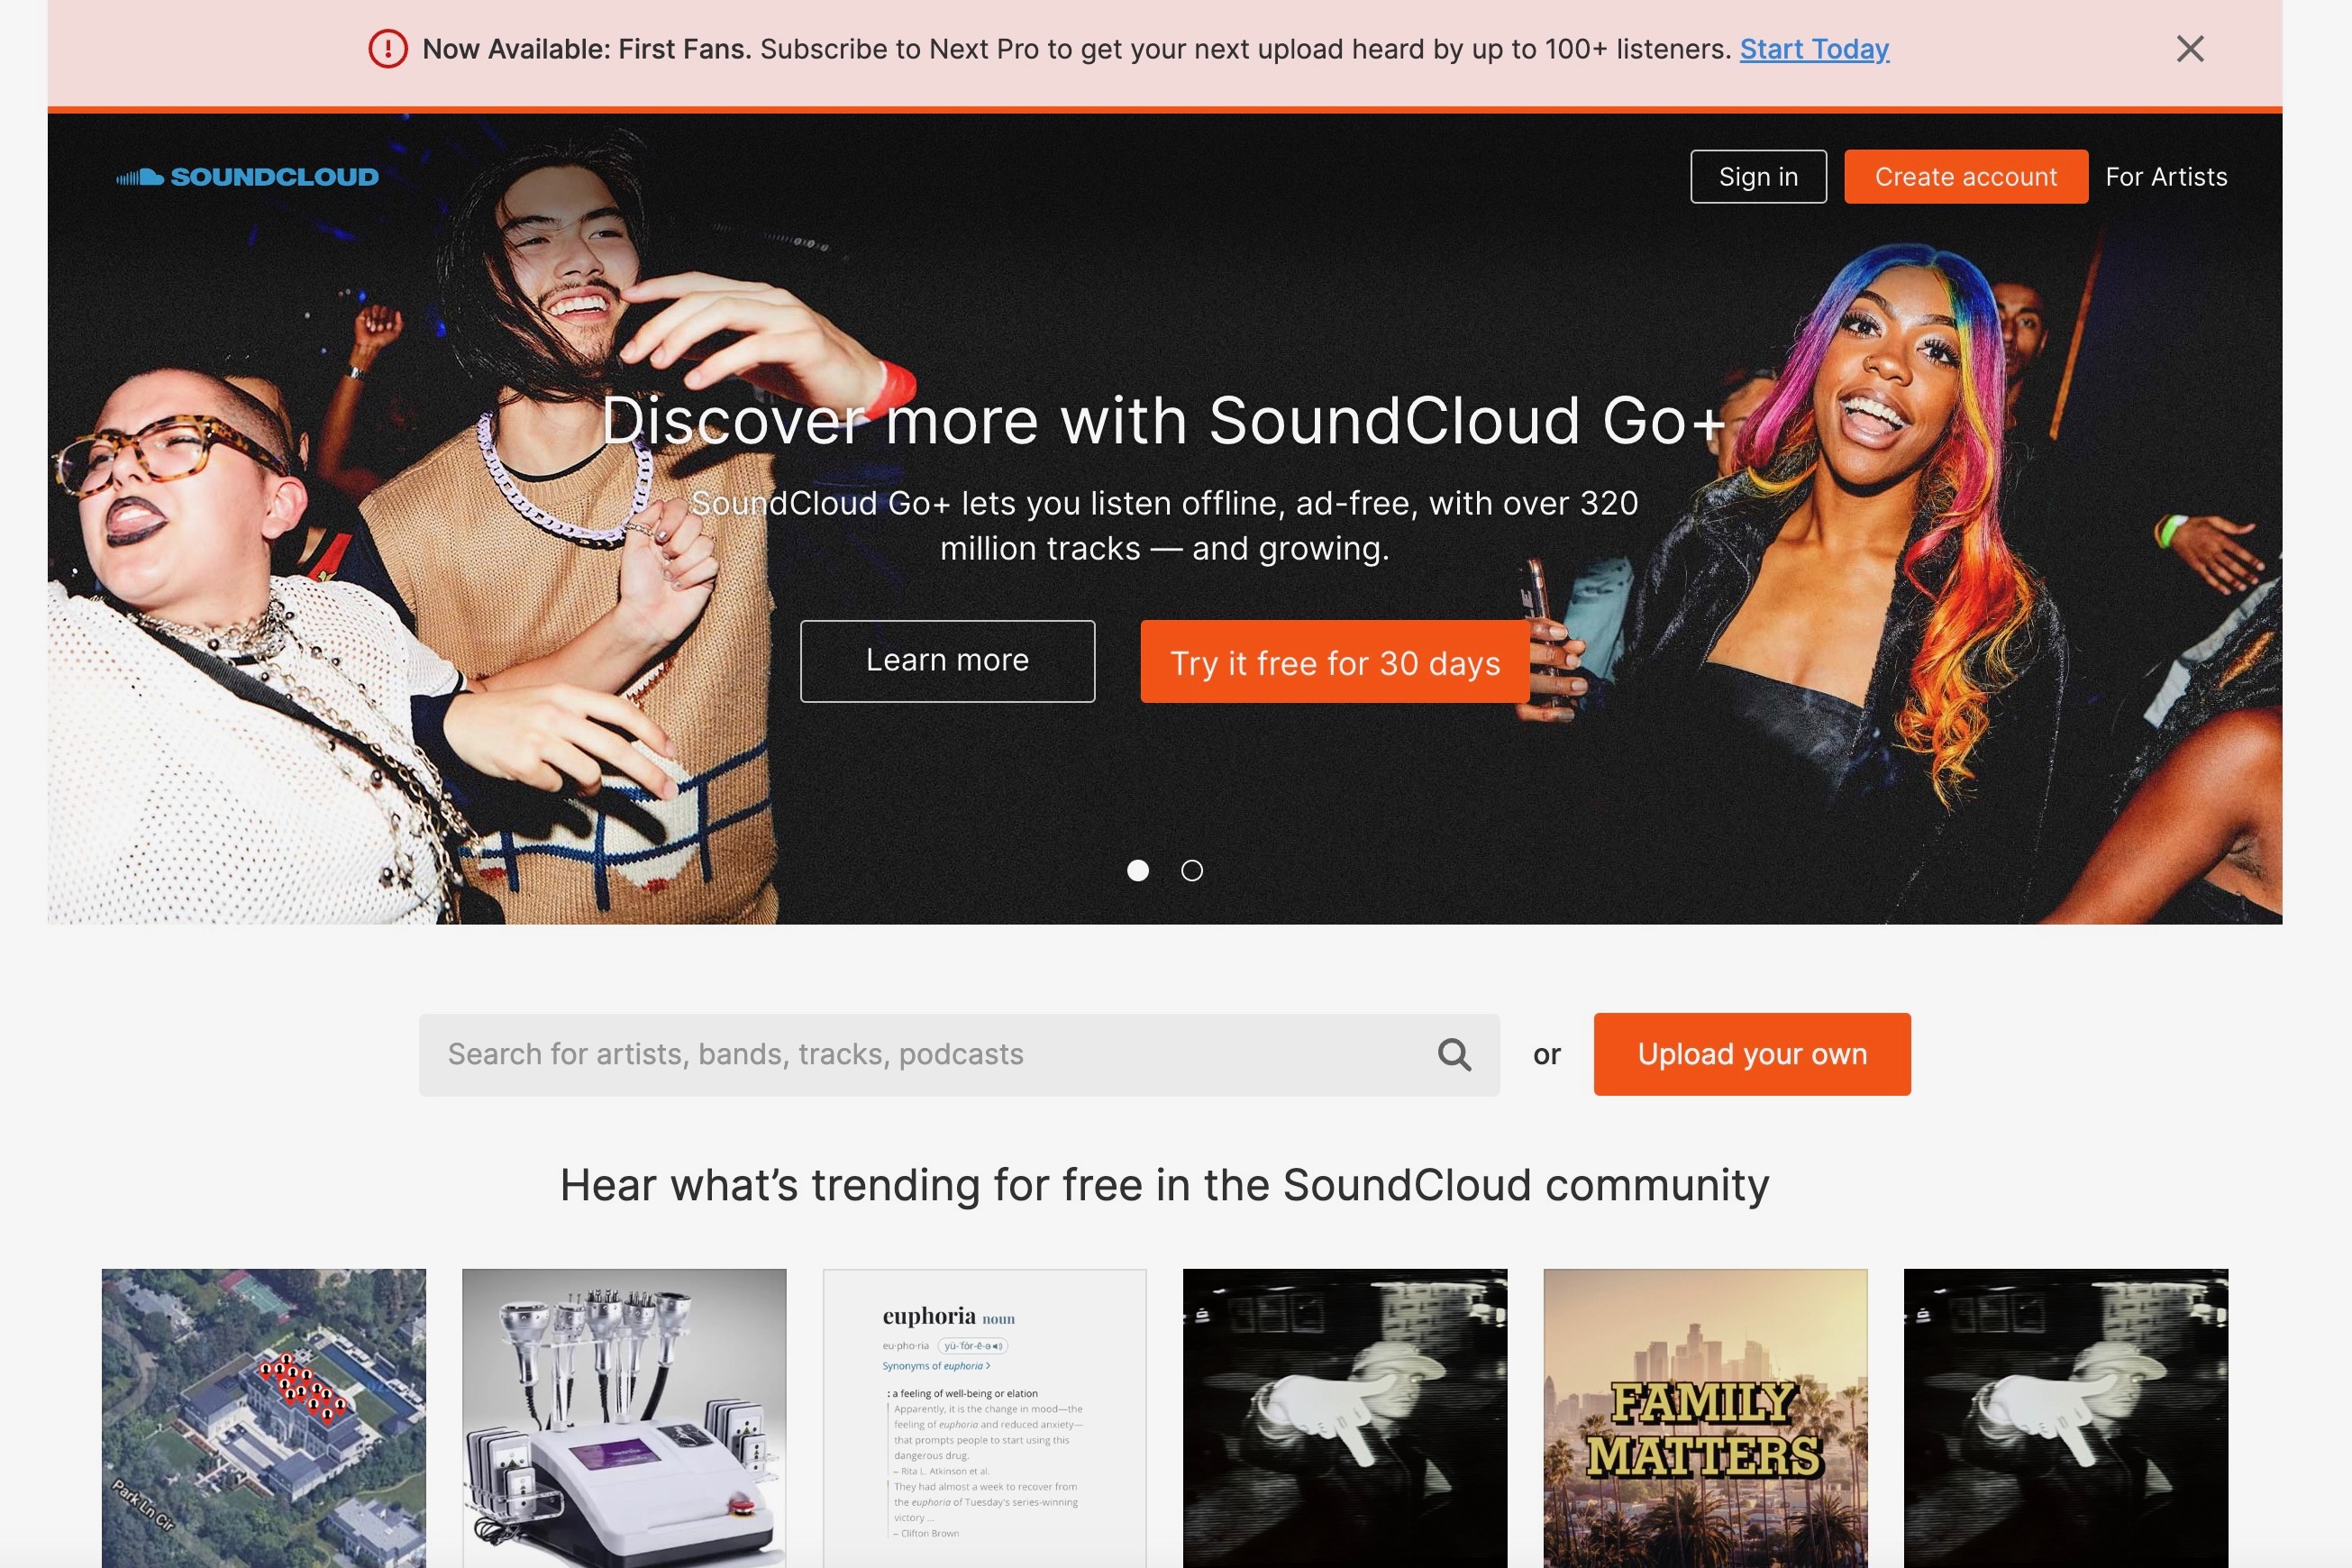 снимок экрана, показывающий веб-сайт SoundCloud.